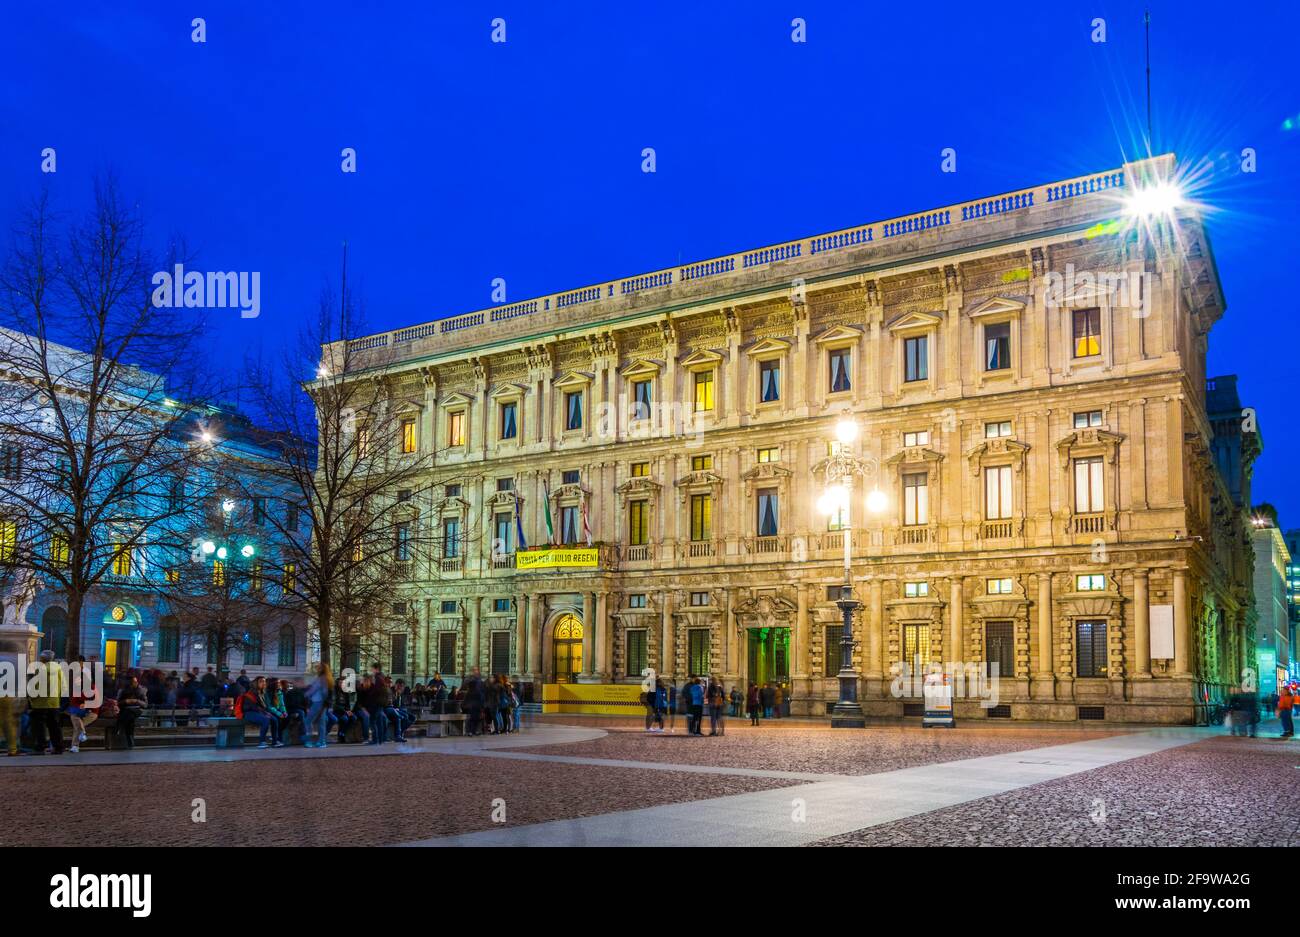 MILANO, 13 MARZO 2016: Vista notturna del Palazzo Marino illuminato, sede del comune di Milano. Foto Stock